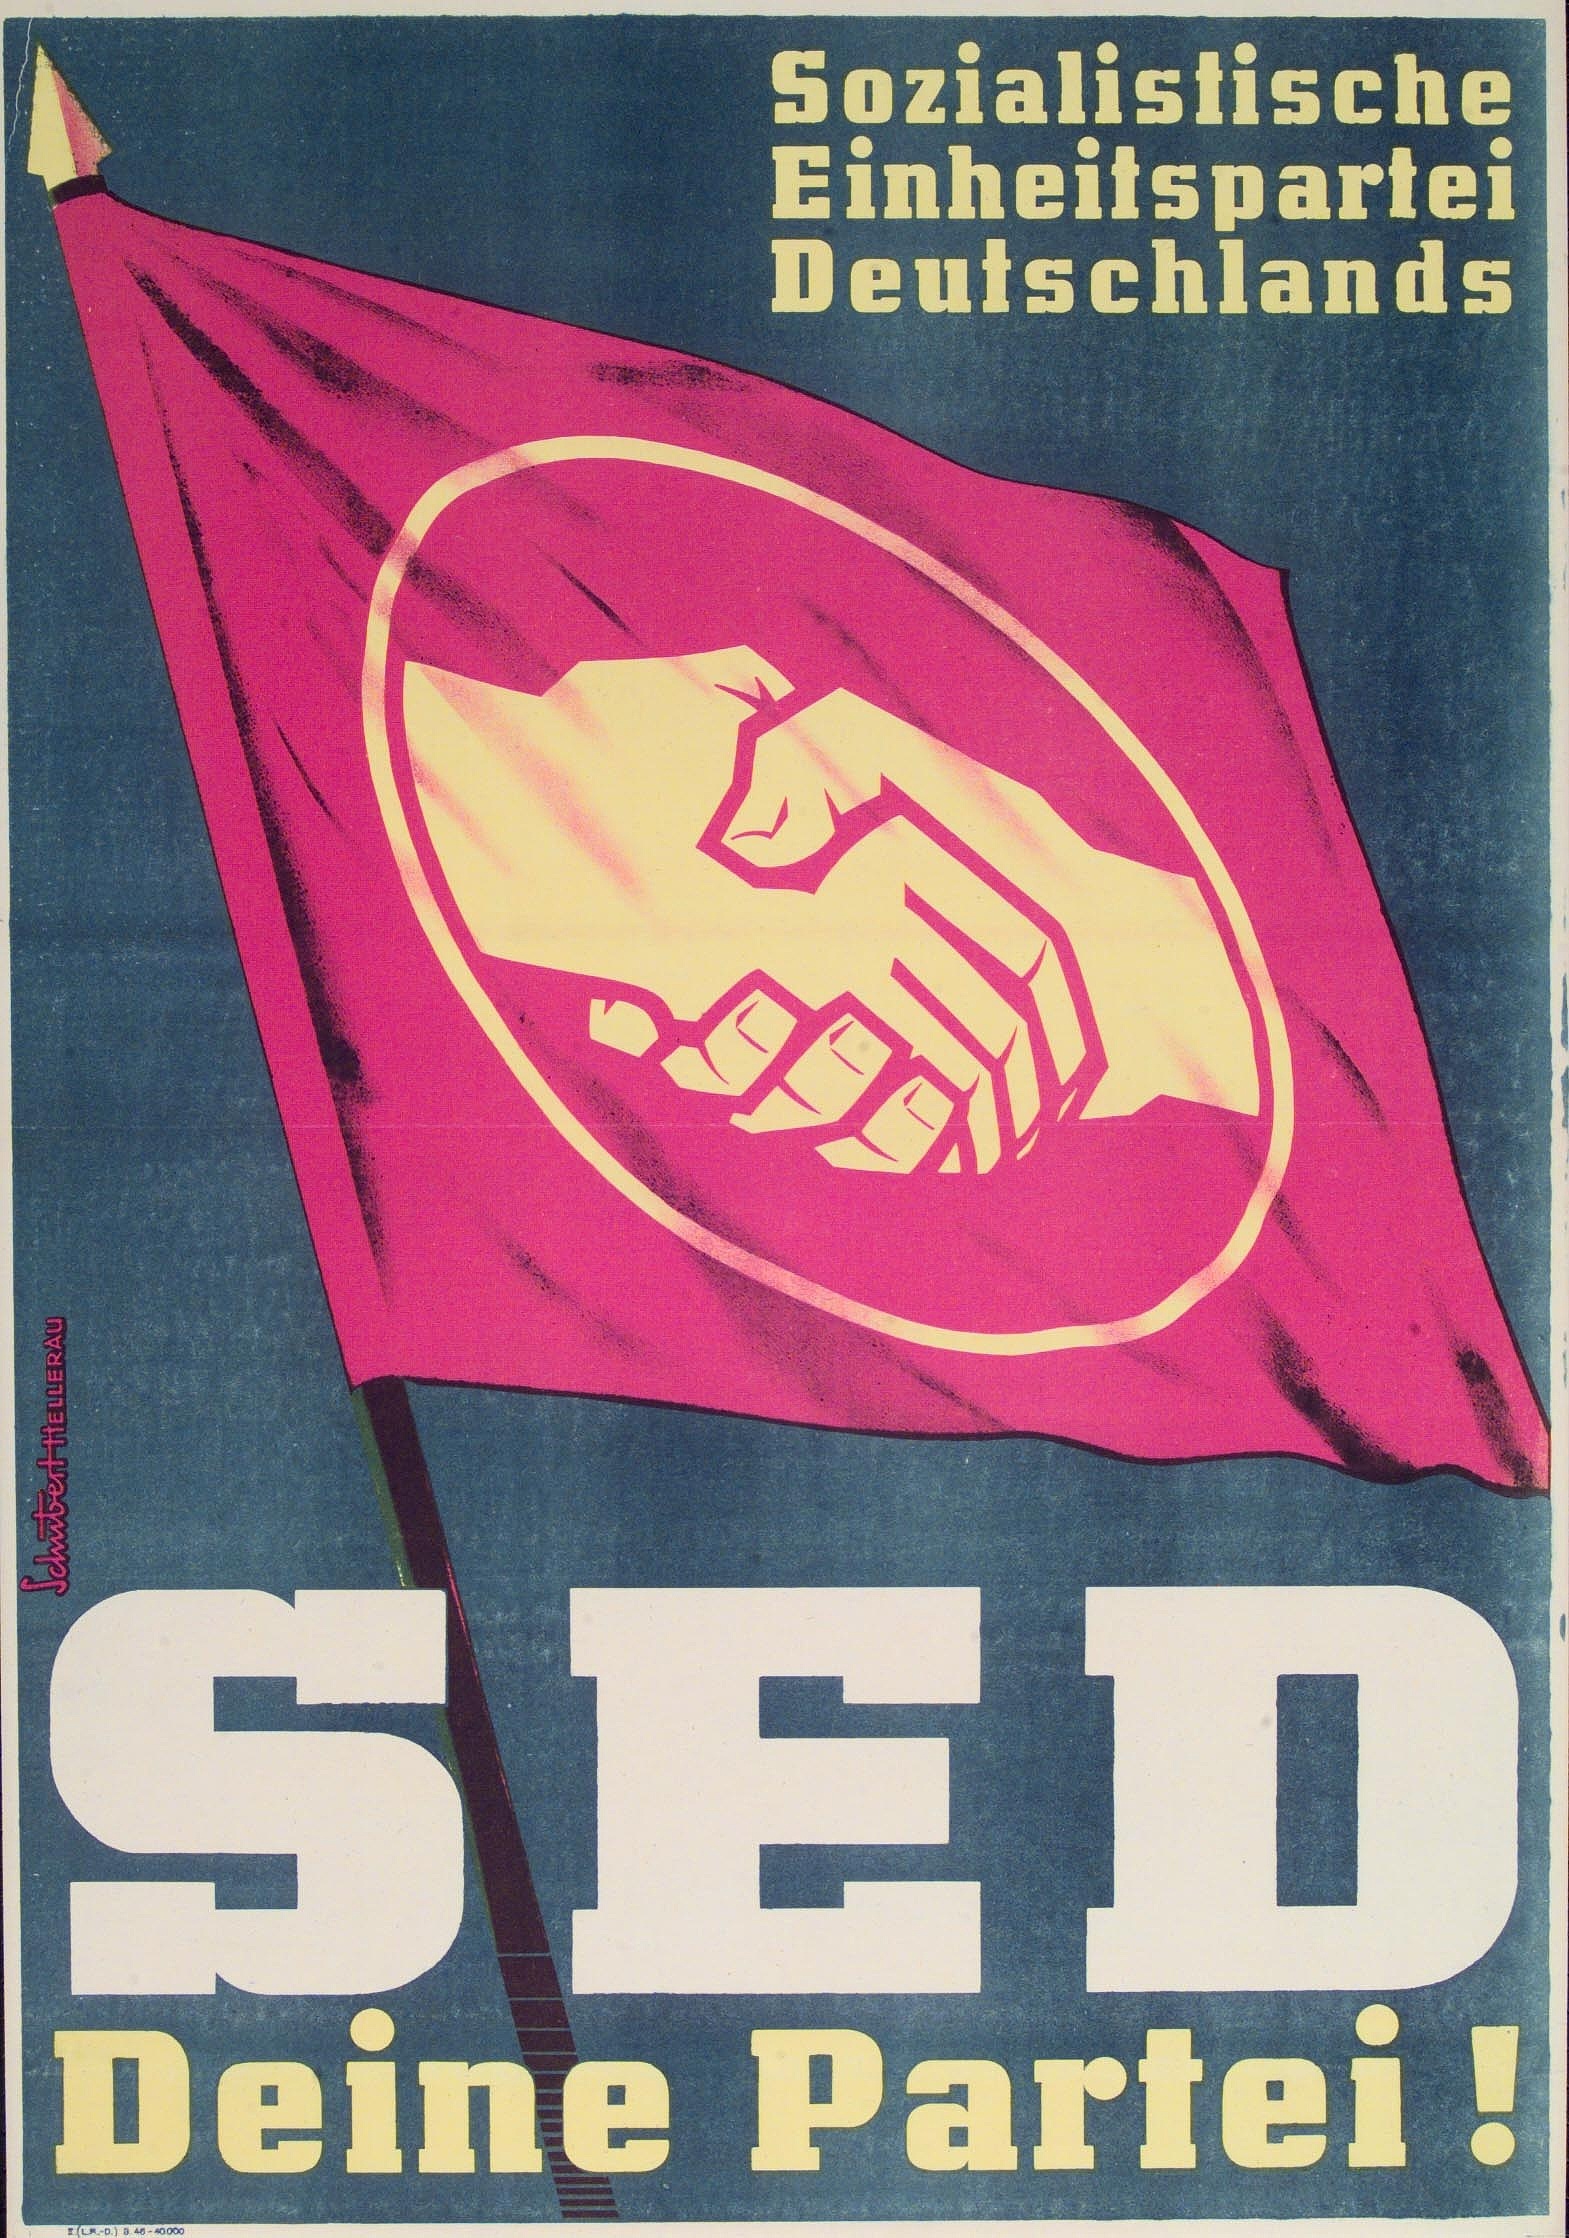 SED-Plakat von 1946 mit rote Fahne und Vereinigungshandschlag und dem Schriftzug "SED - Deine Partei". Rechte: Rechteinhaber unbekannt. Quelle: AdsD, 6/PLKA035382.